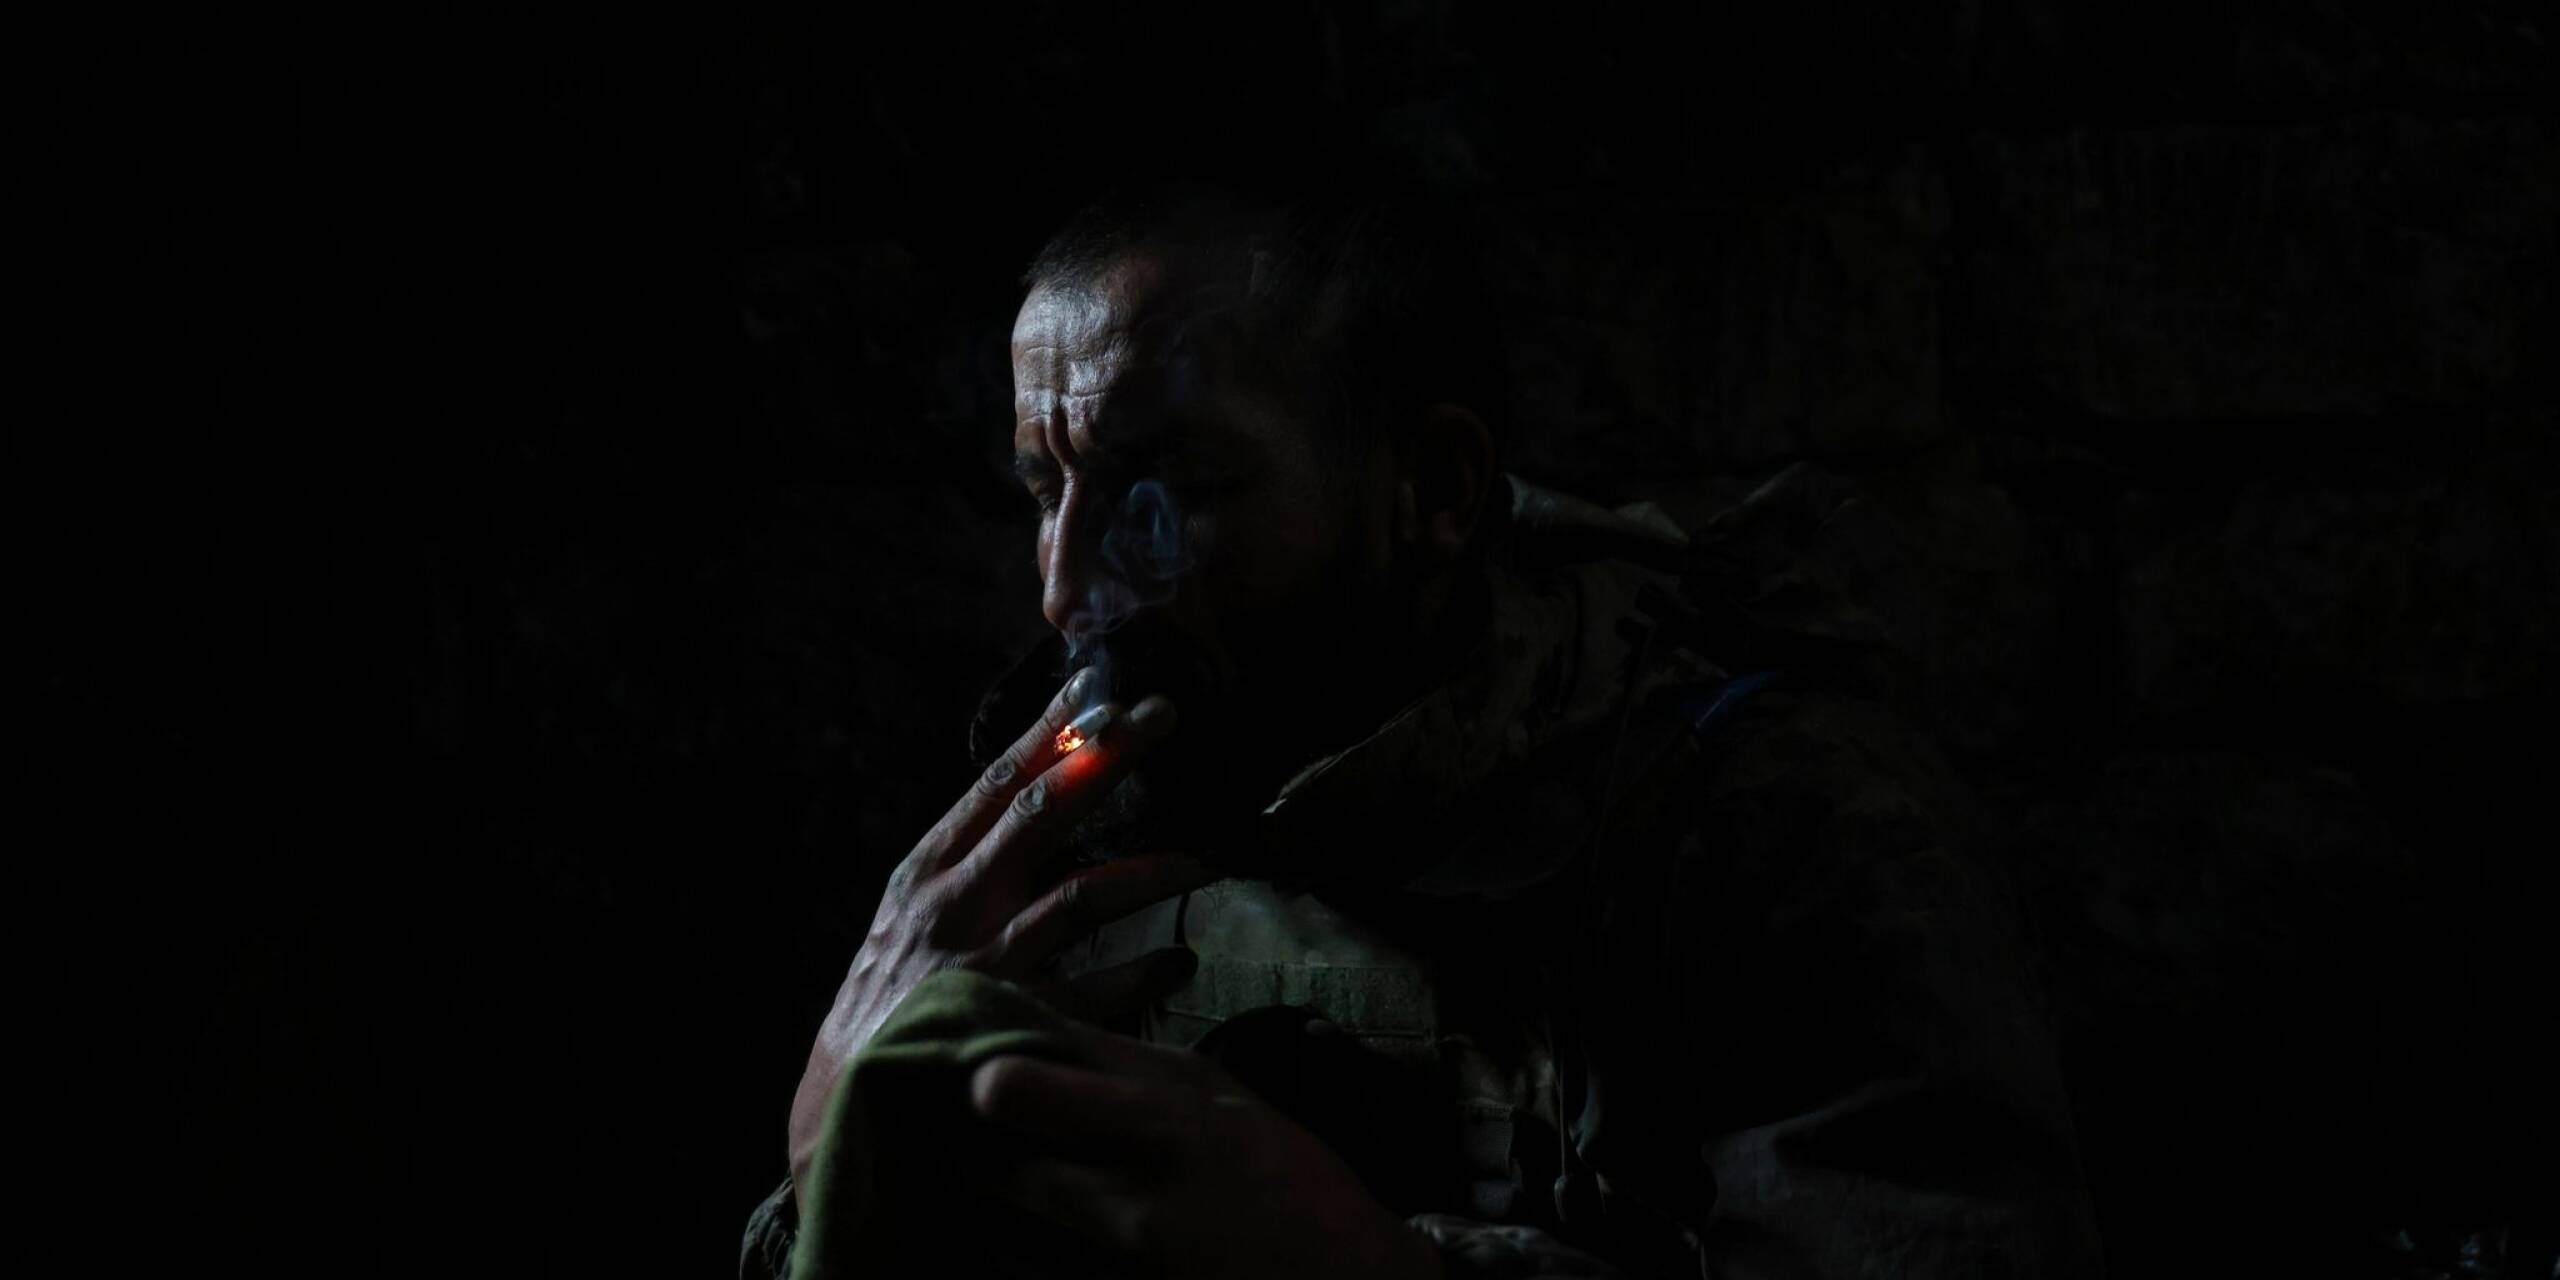 Ein ukrainischer Soldat raucht eine Zigarette, während er in einem Bunker an der Frontlinie bei Andrijewka Schutz vor Beschuss sucht.